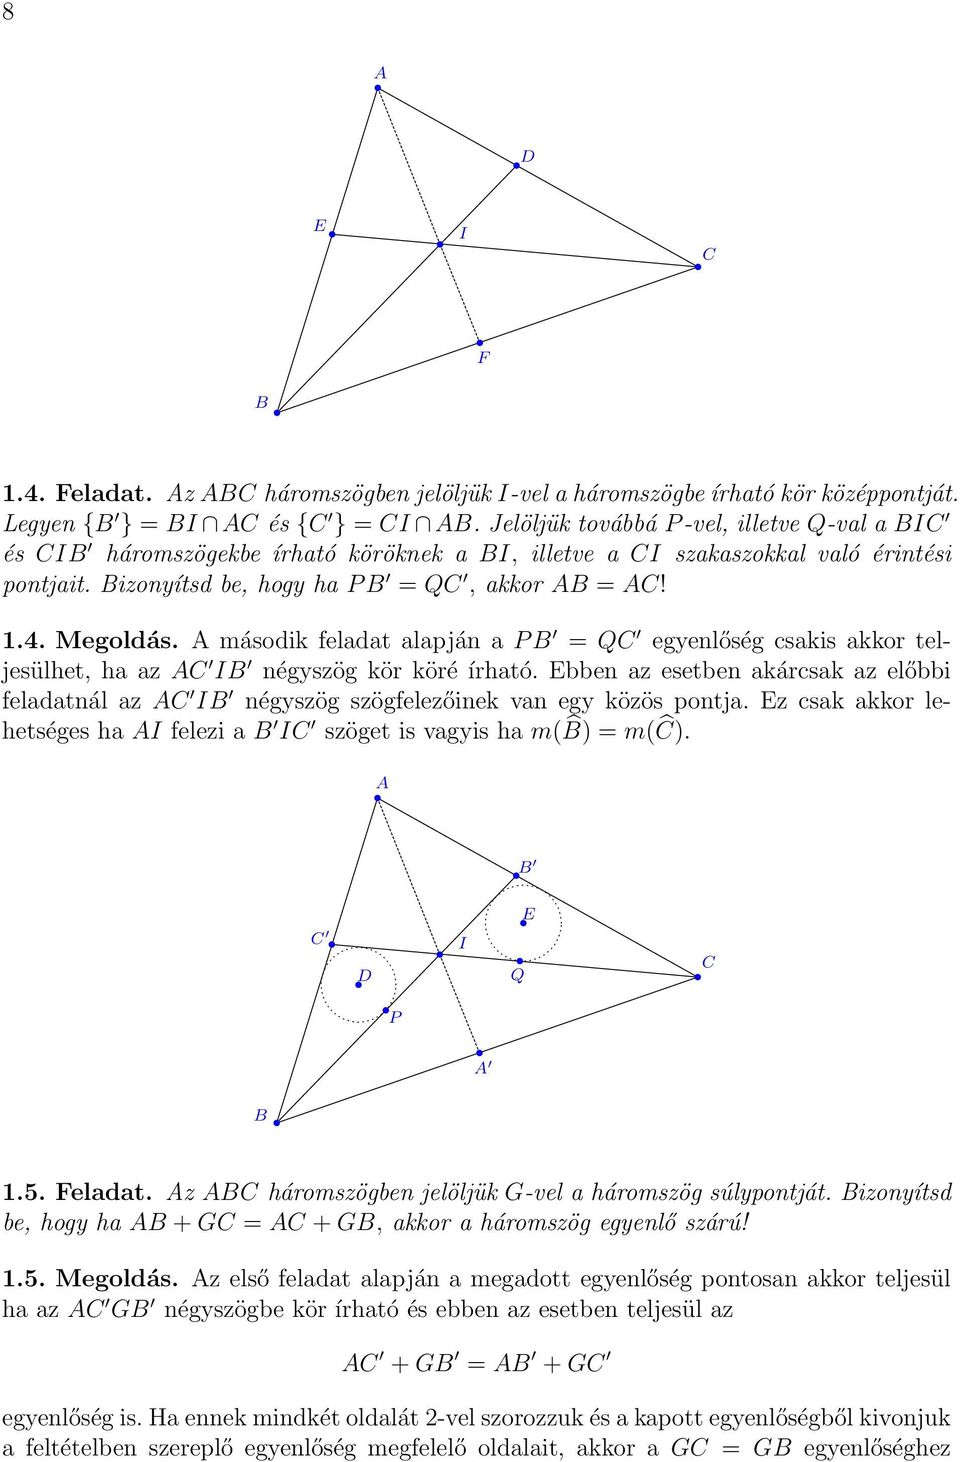 második feladat alapján a P = Q egyenlőség csakis akkor teljesülhet, ha az I négyszög kör köré írható. bben az esetben akárcsak az előbbi feladatnál az I négyszög szögfelezőinek van egy közös pontja.